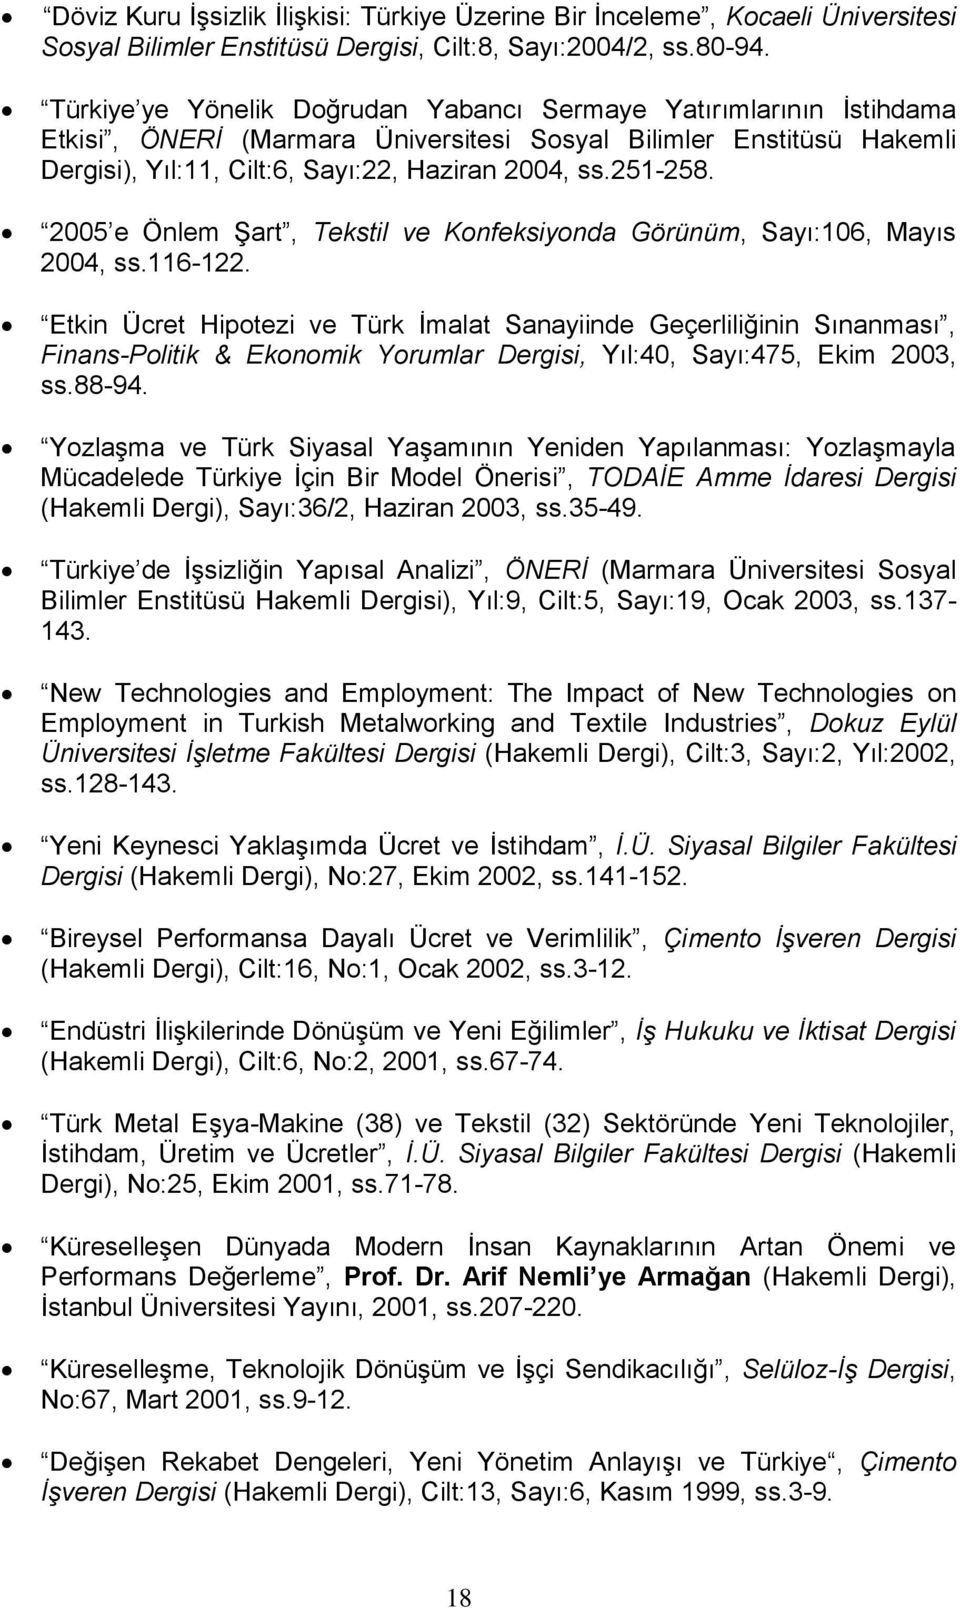 2005 e Önlem Şart, Tekstil ve Konfeksiyonda Görünüm, Sayı:106, Mayıs 2004, ss.116-122.